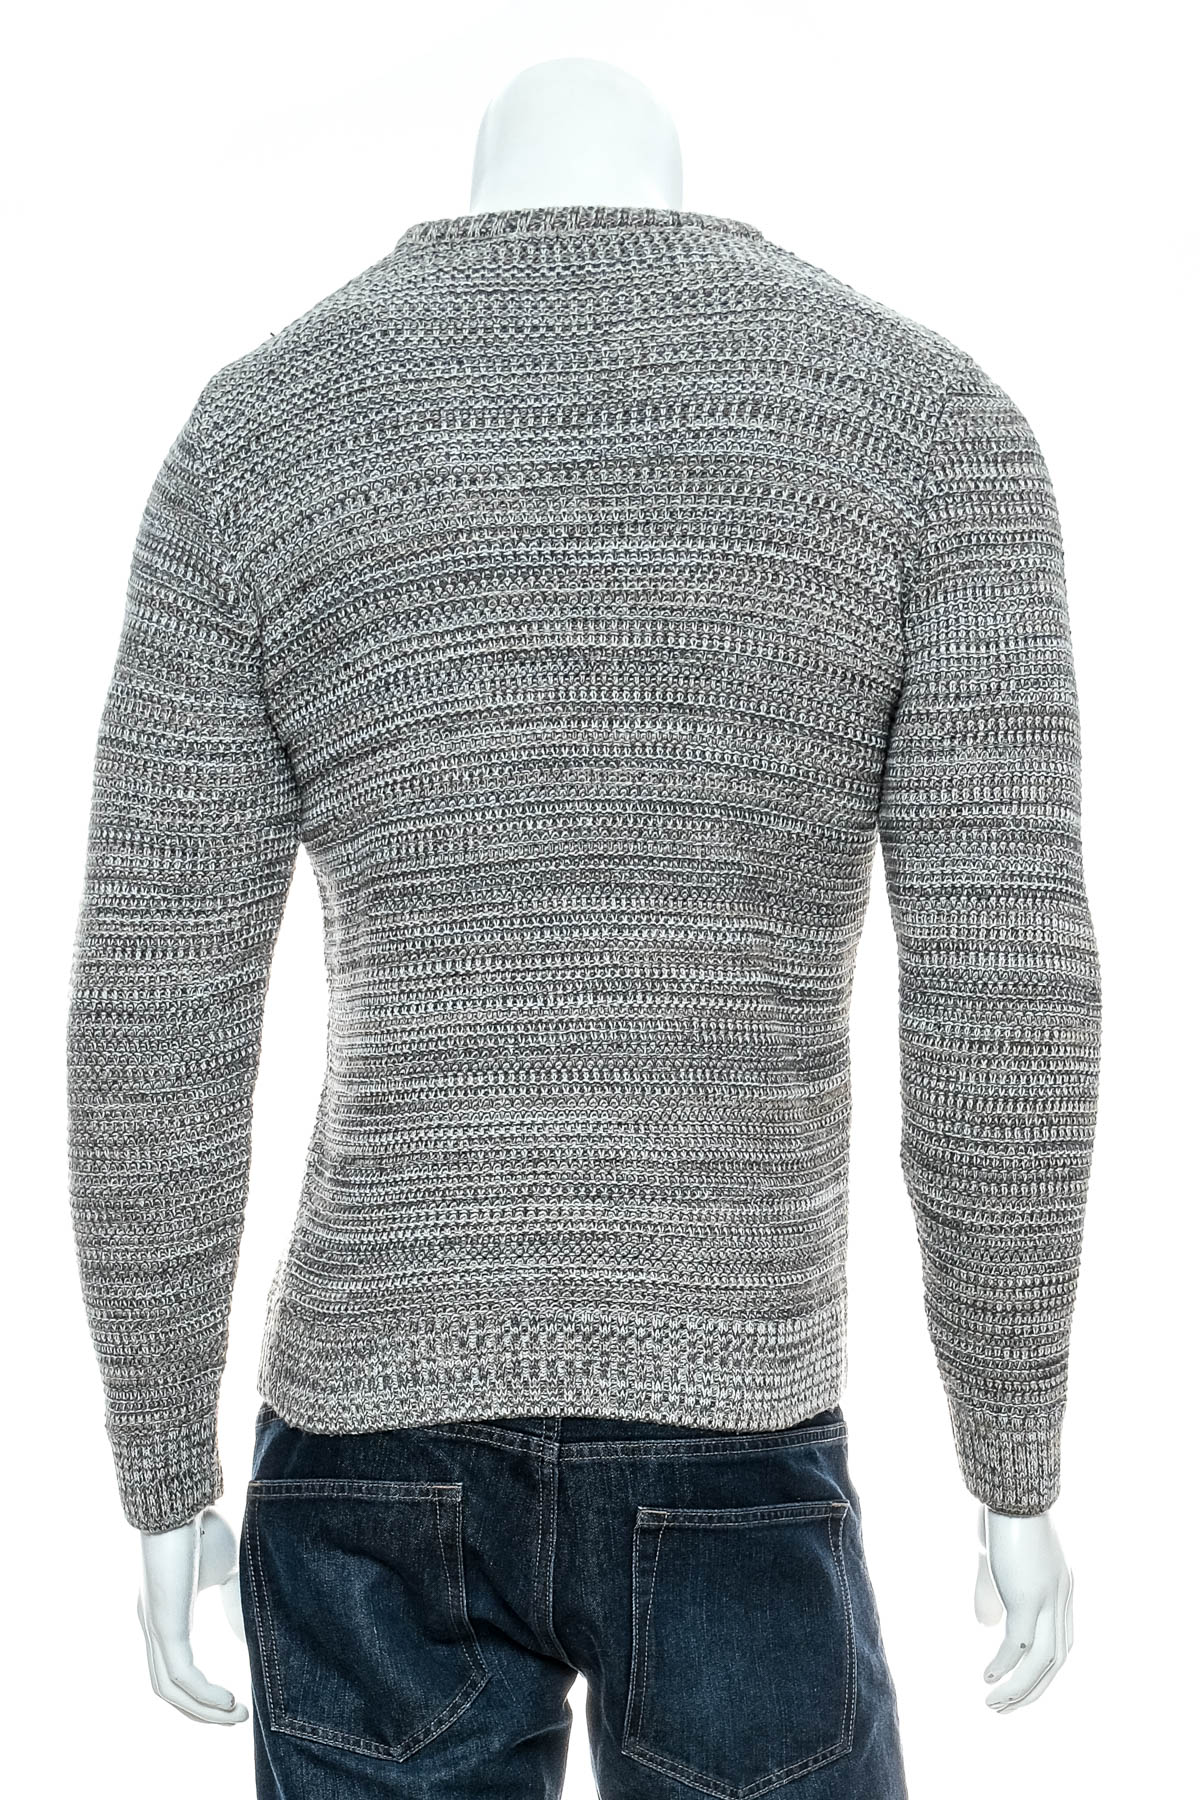 Men's sweater - DeFacto - 1